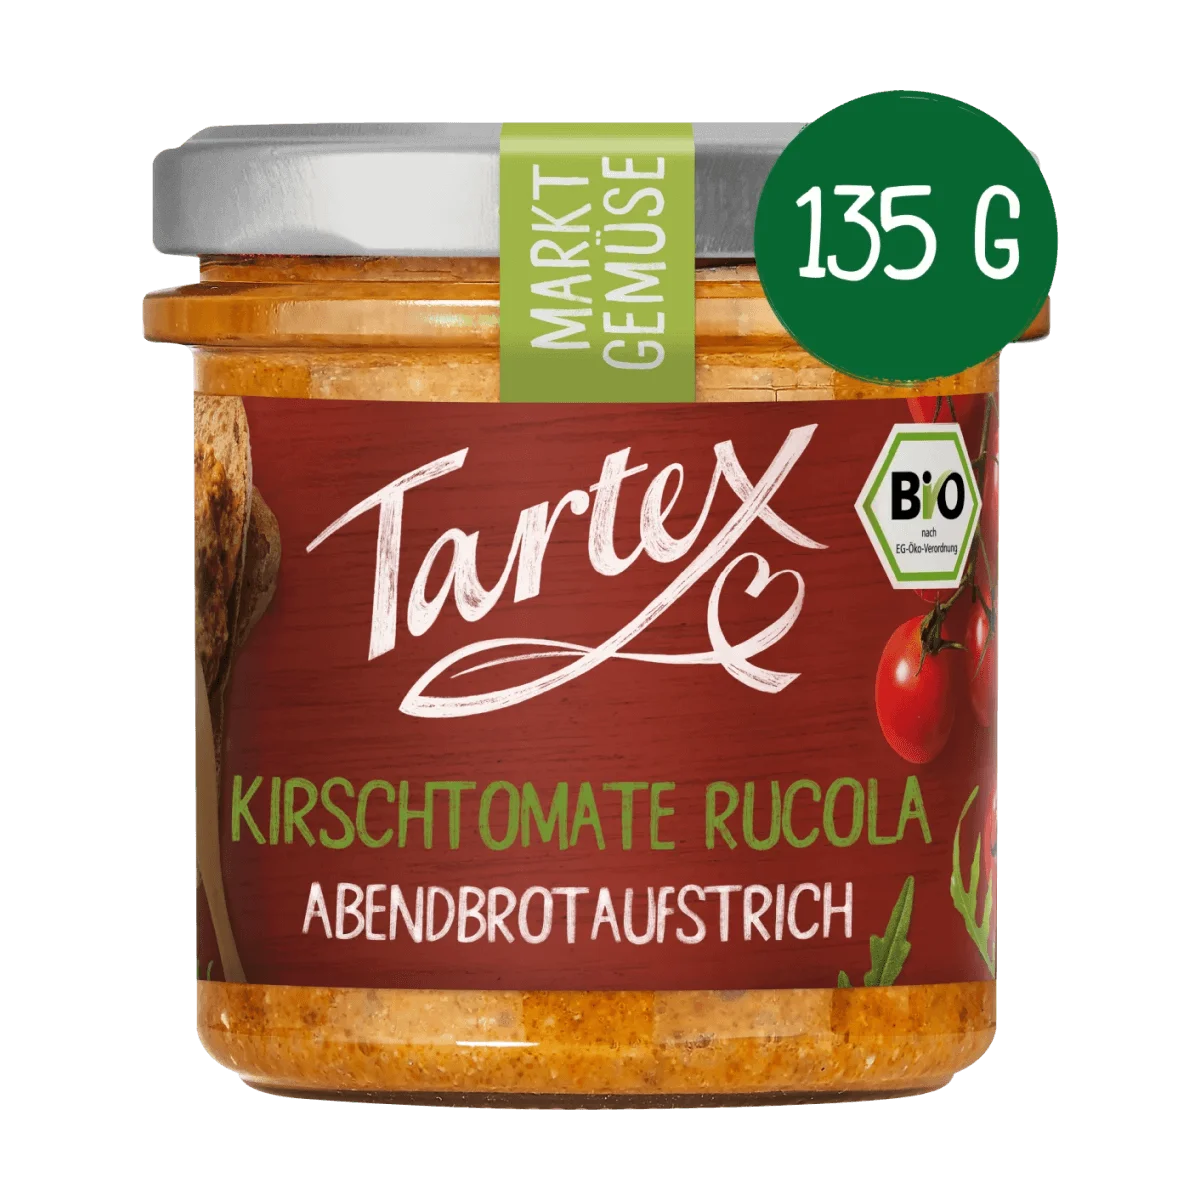 Tartex Brotaufstrich, Kirschtomate Rucola, 135 g